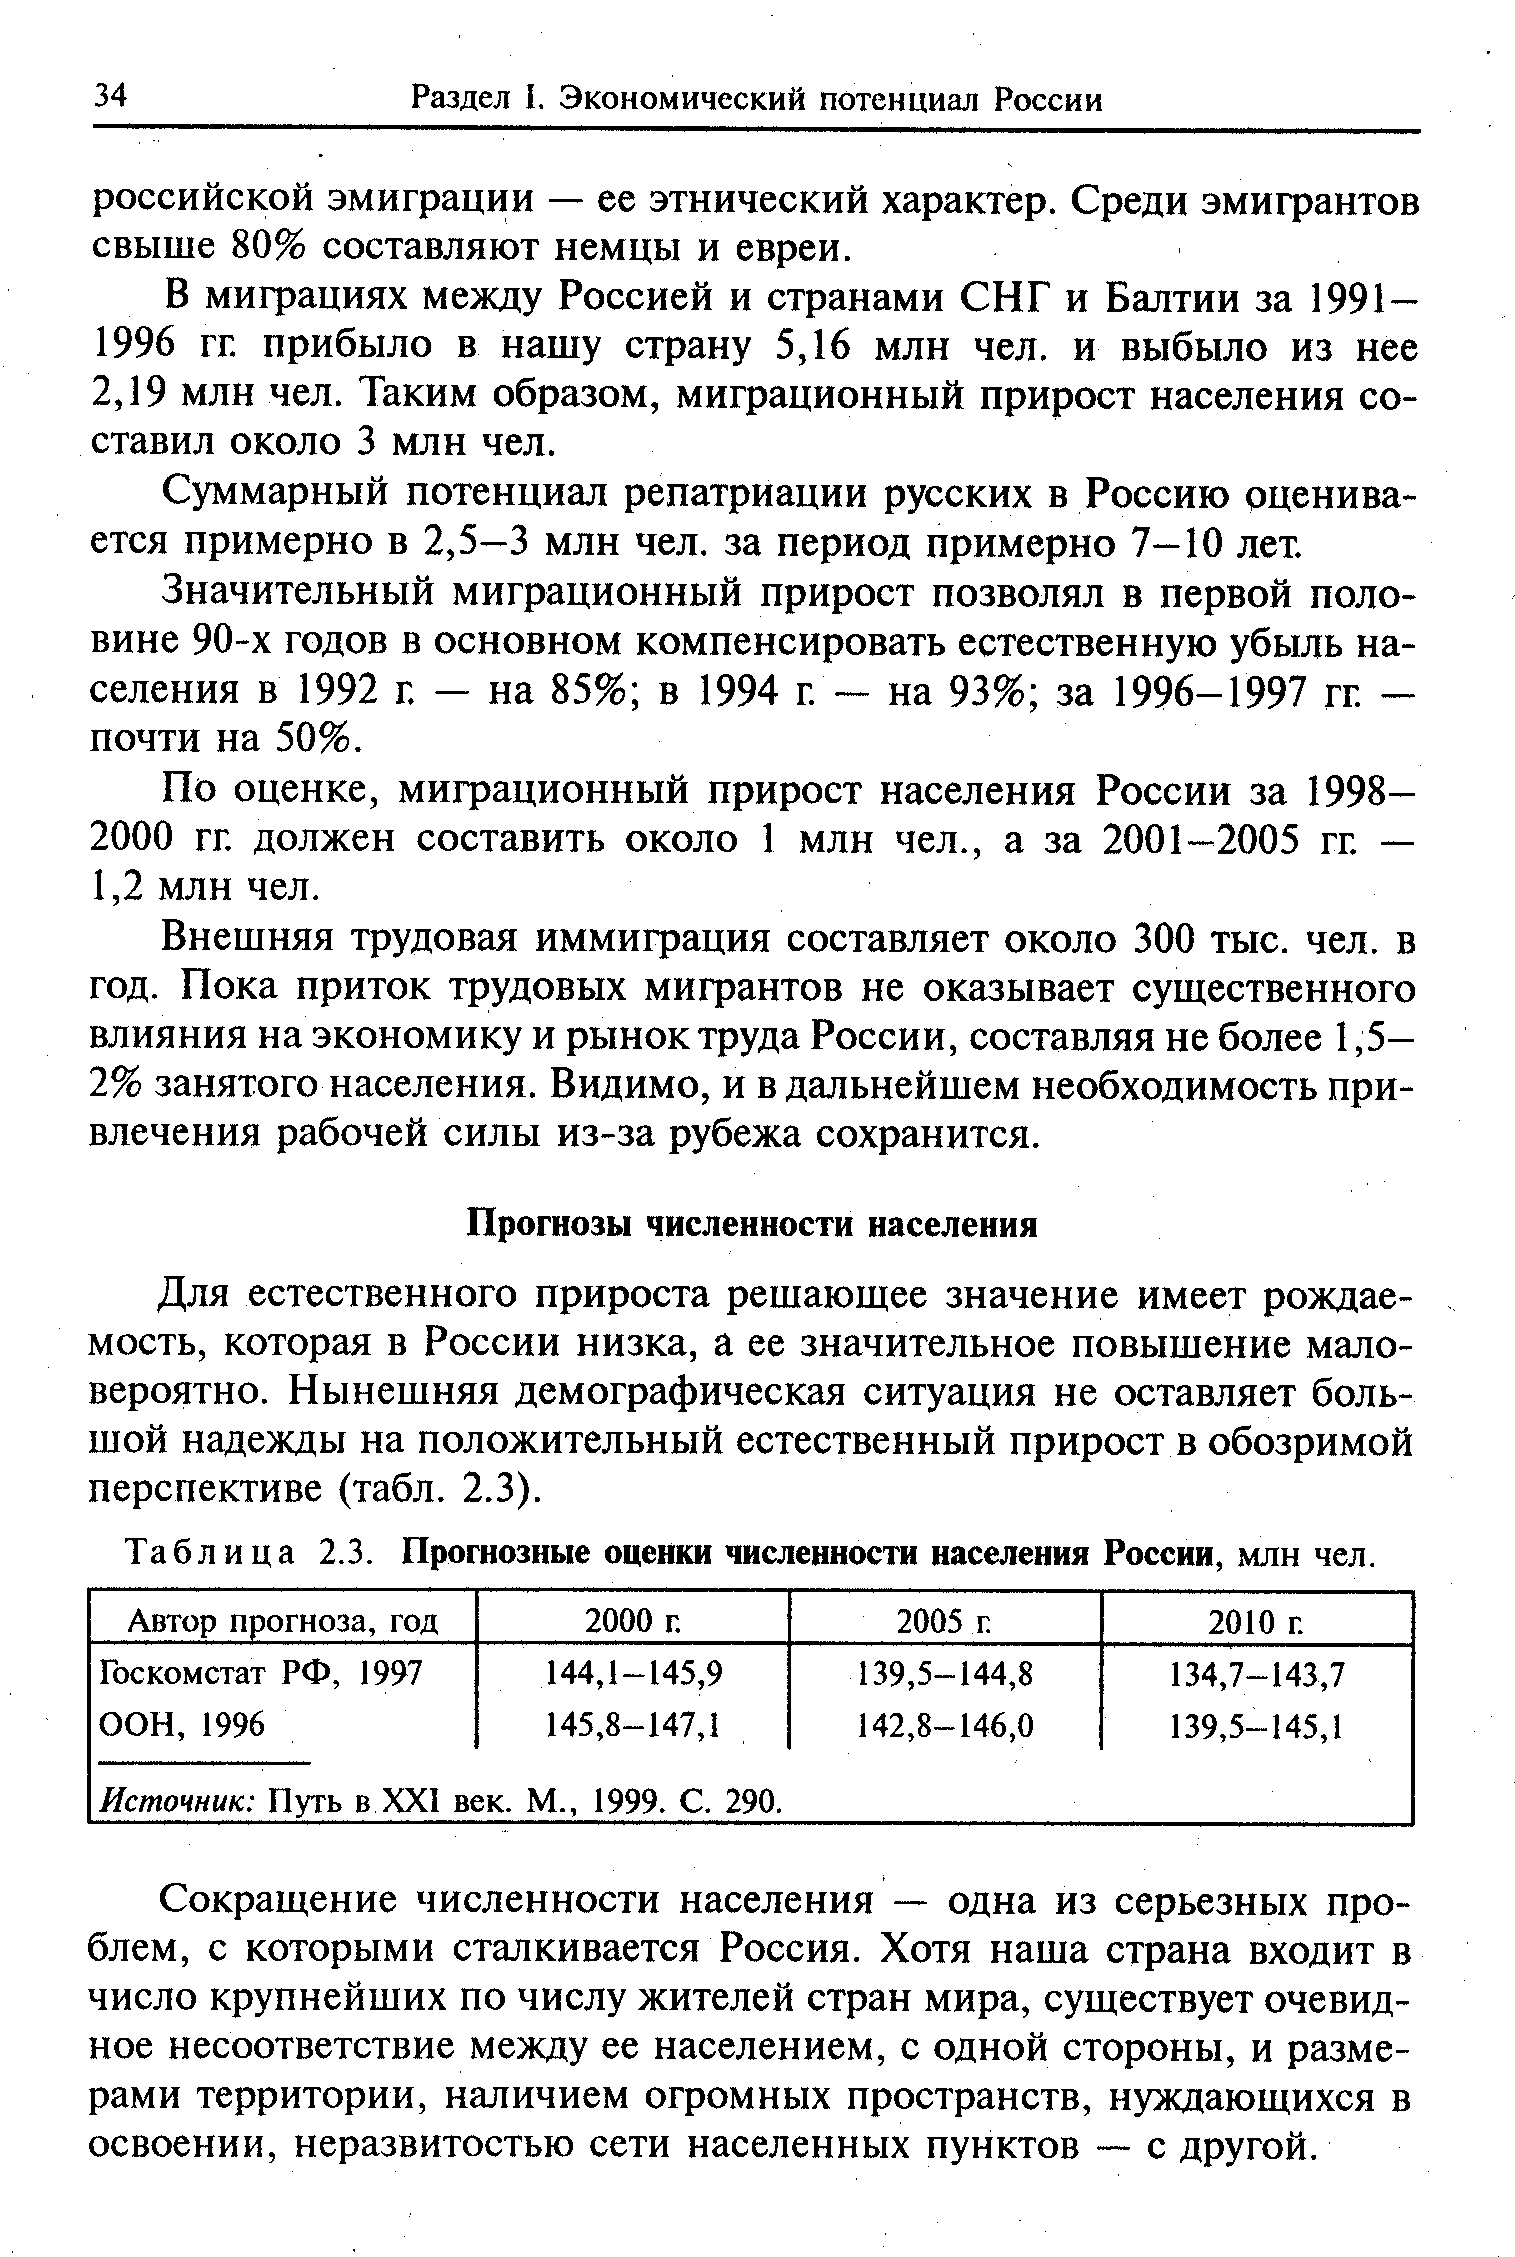 Таблица 2.3. Прогнозные оценки численности населения России, млн чел.
